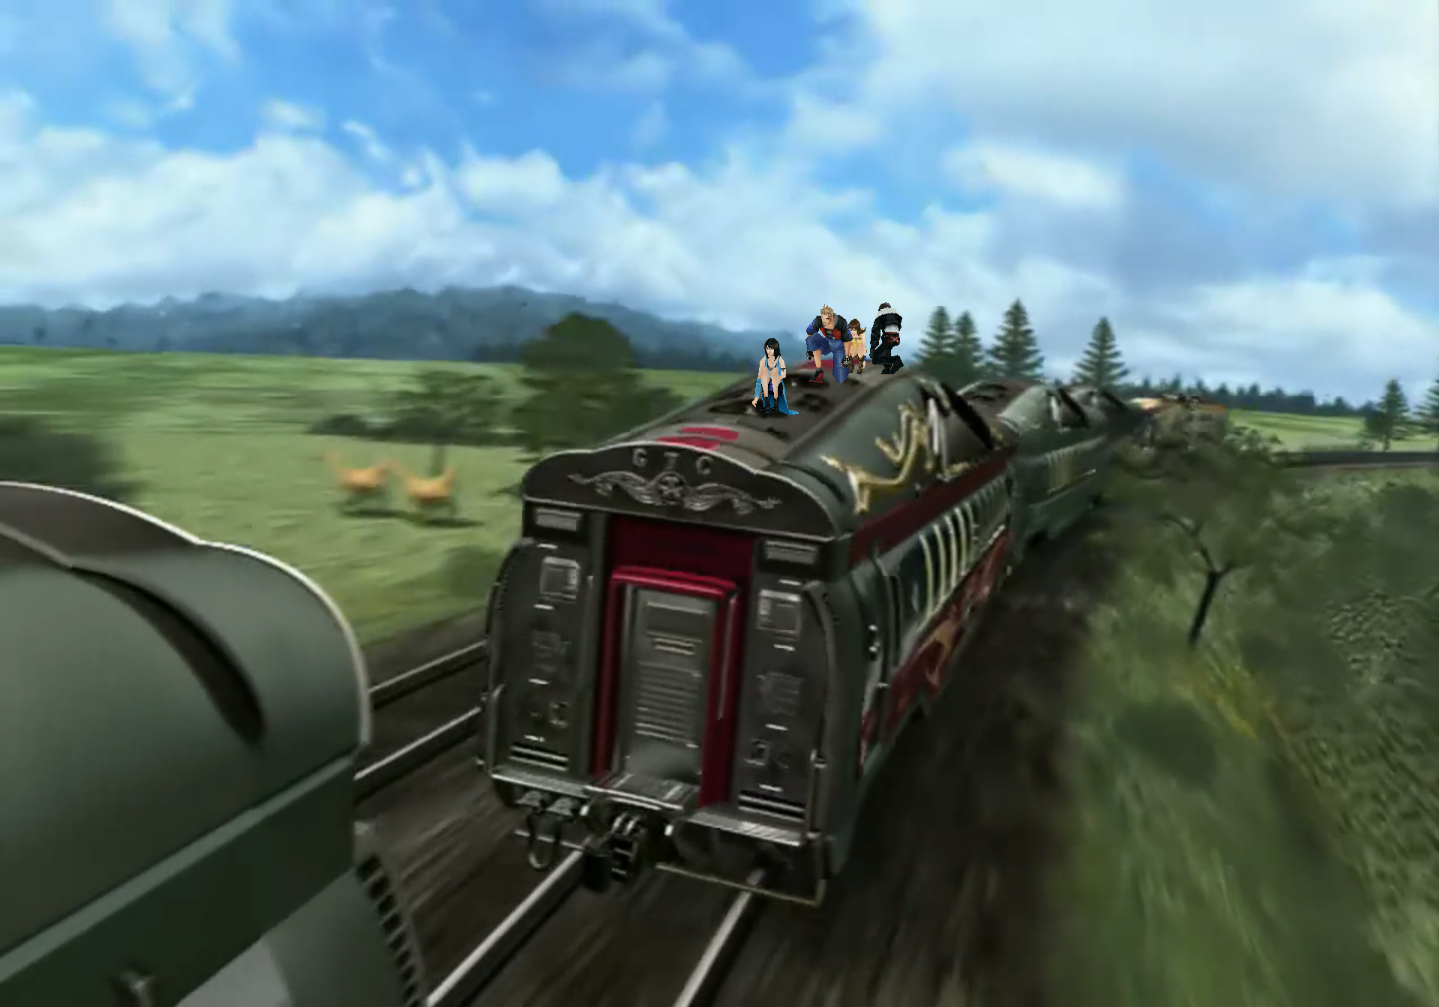 Einige Zugwaggons fahren durch die Landschaft und werden abgekoppelt. Das Ganze ist ein vorgerenderter Film, doch auf einem der Waggons sind In-Game Modelle von Rinoa, Xell und Squall, die sich weiterhin steuern lassen.